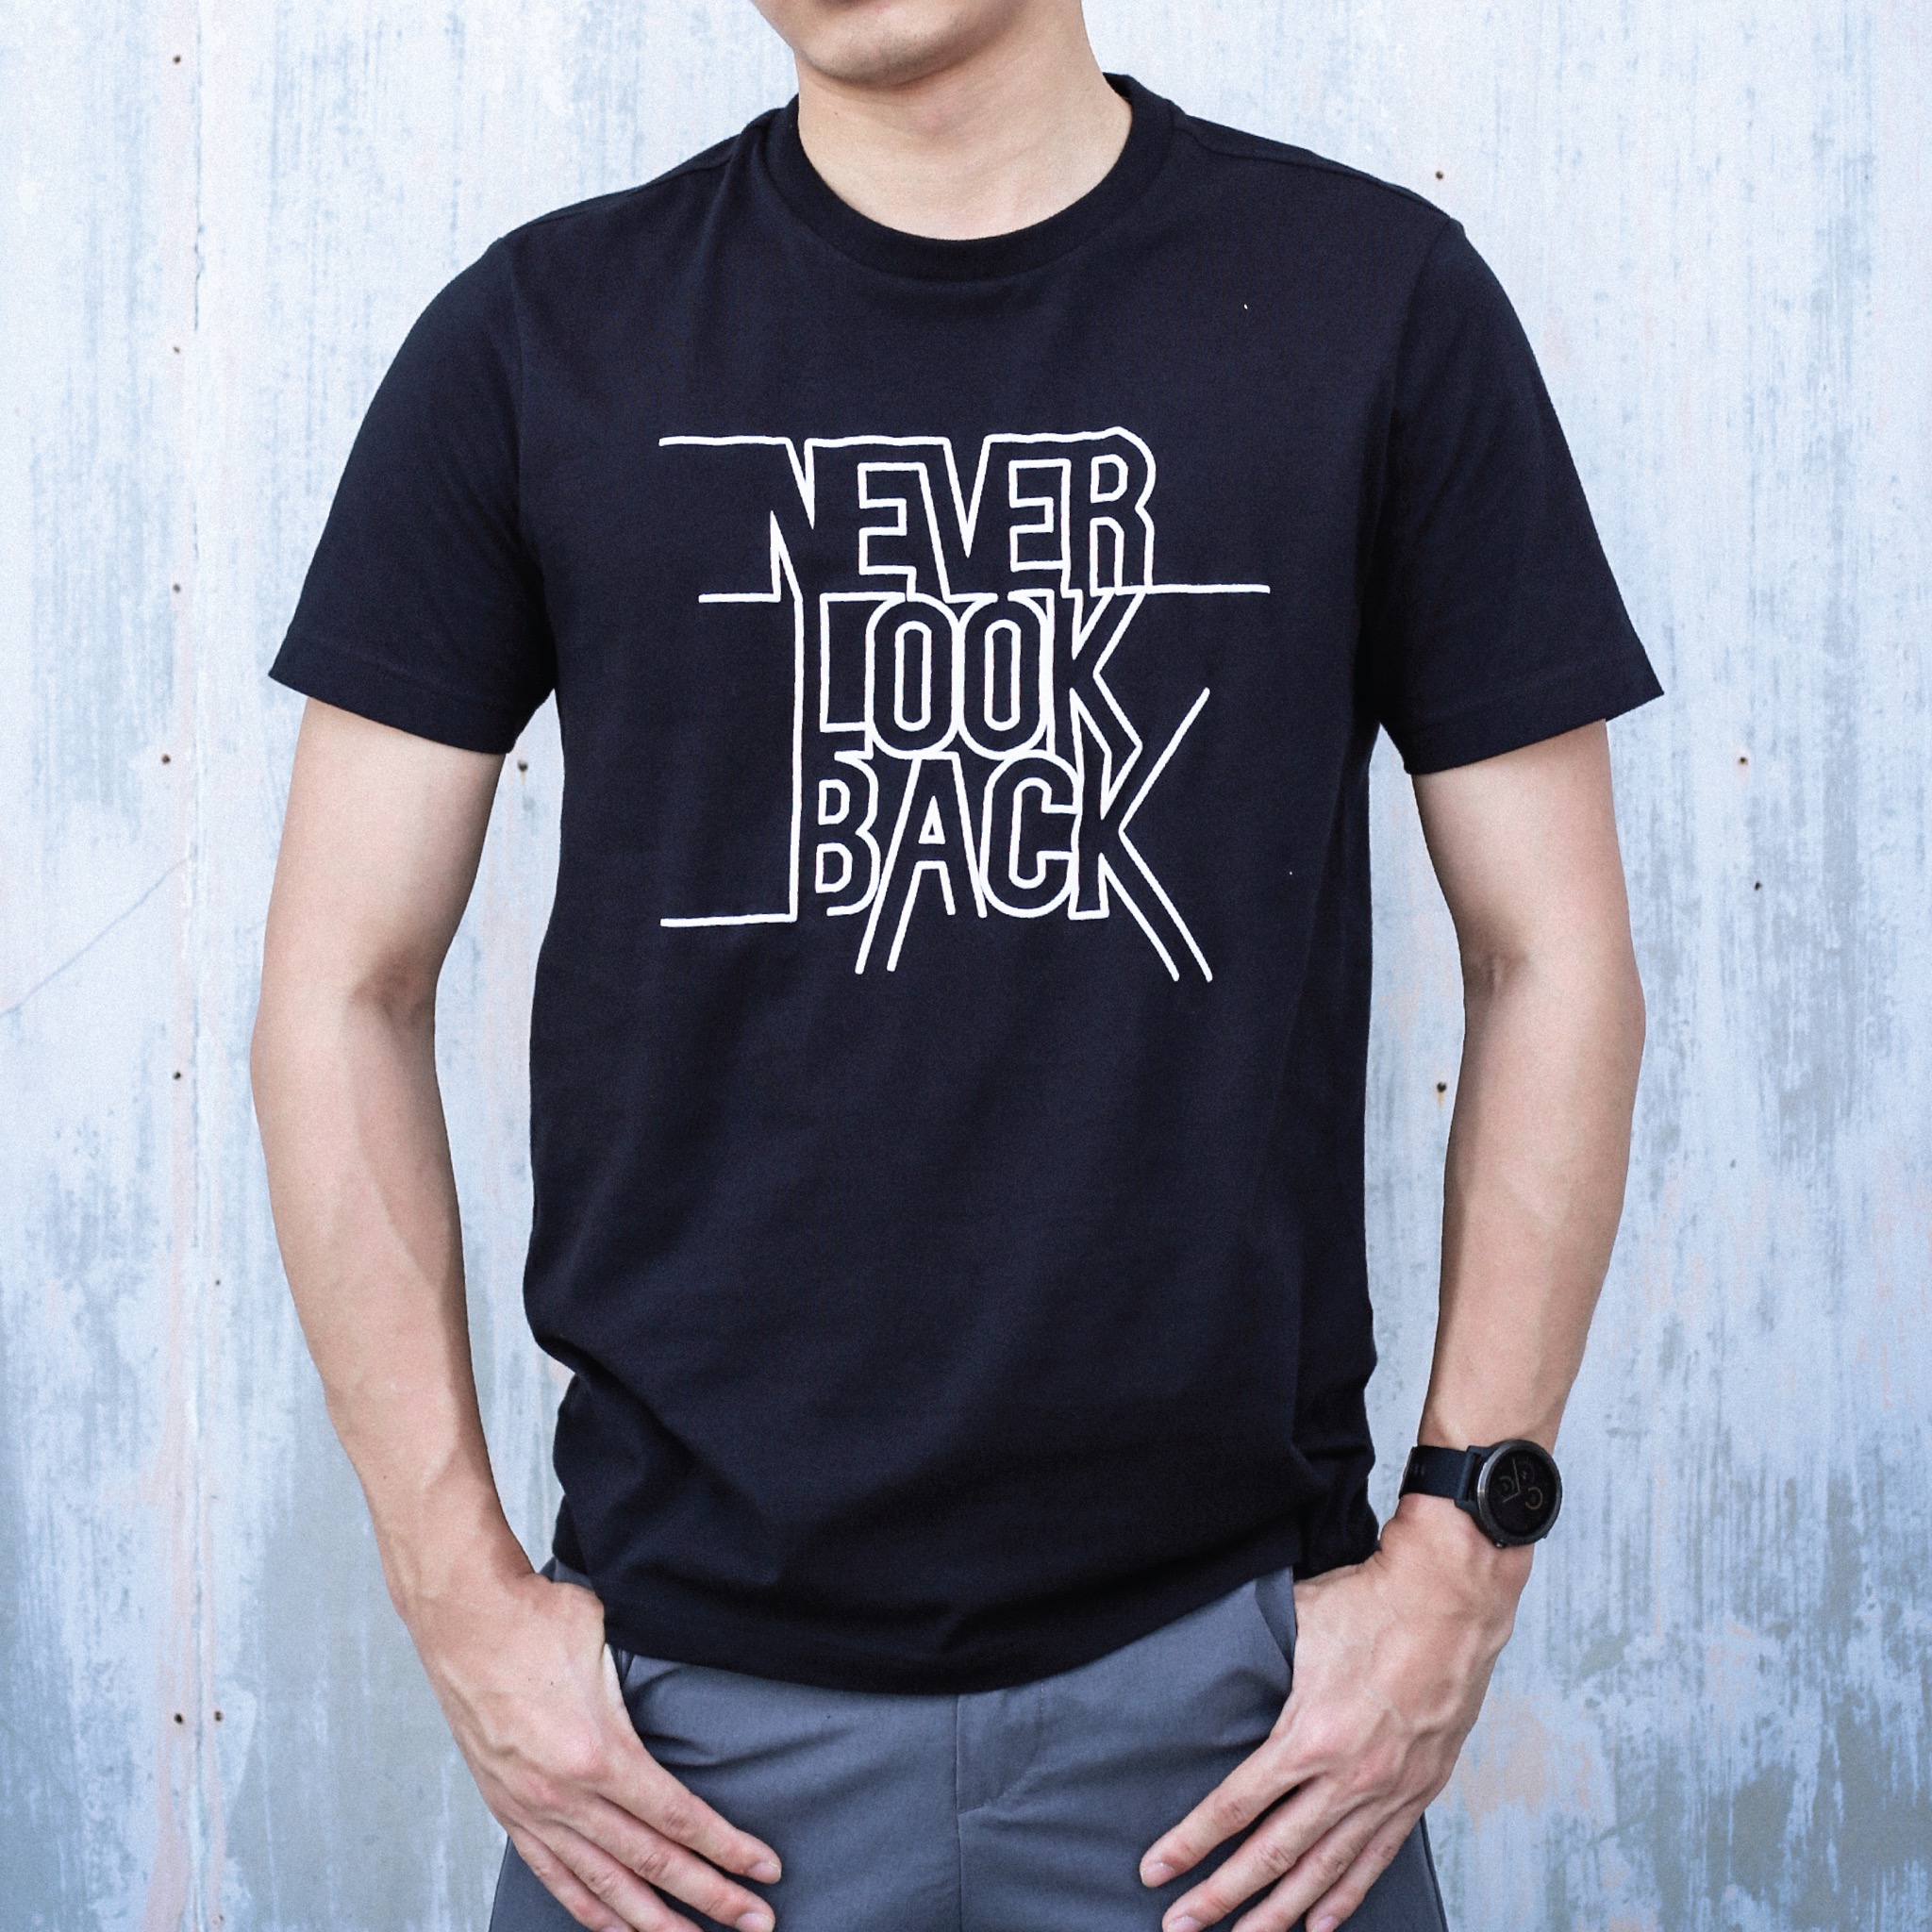 เสื้อยืดคอกลมสีดำ สกรีนลาย "Never look back" รหัส SCTK2